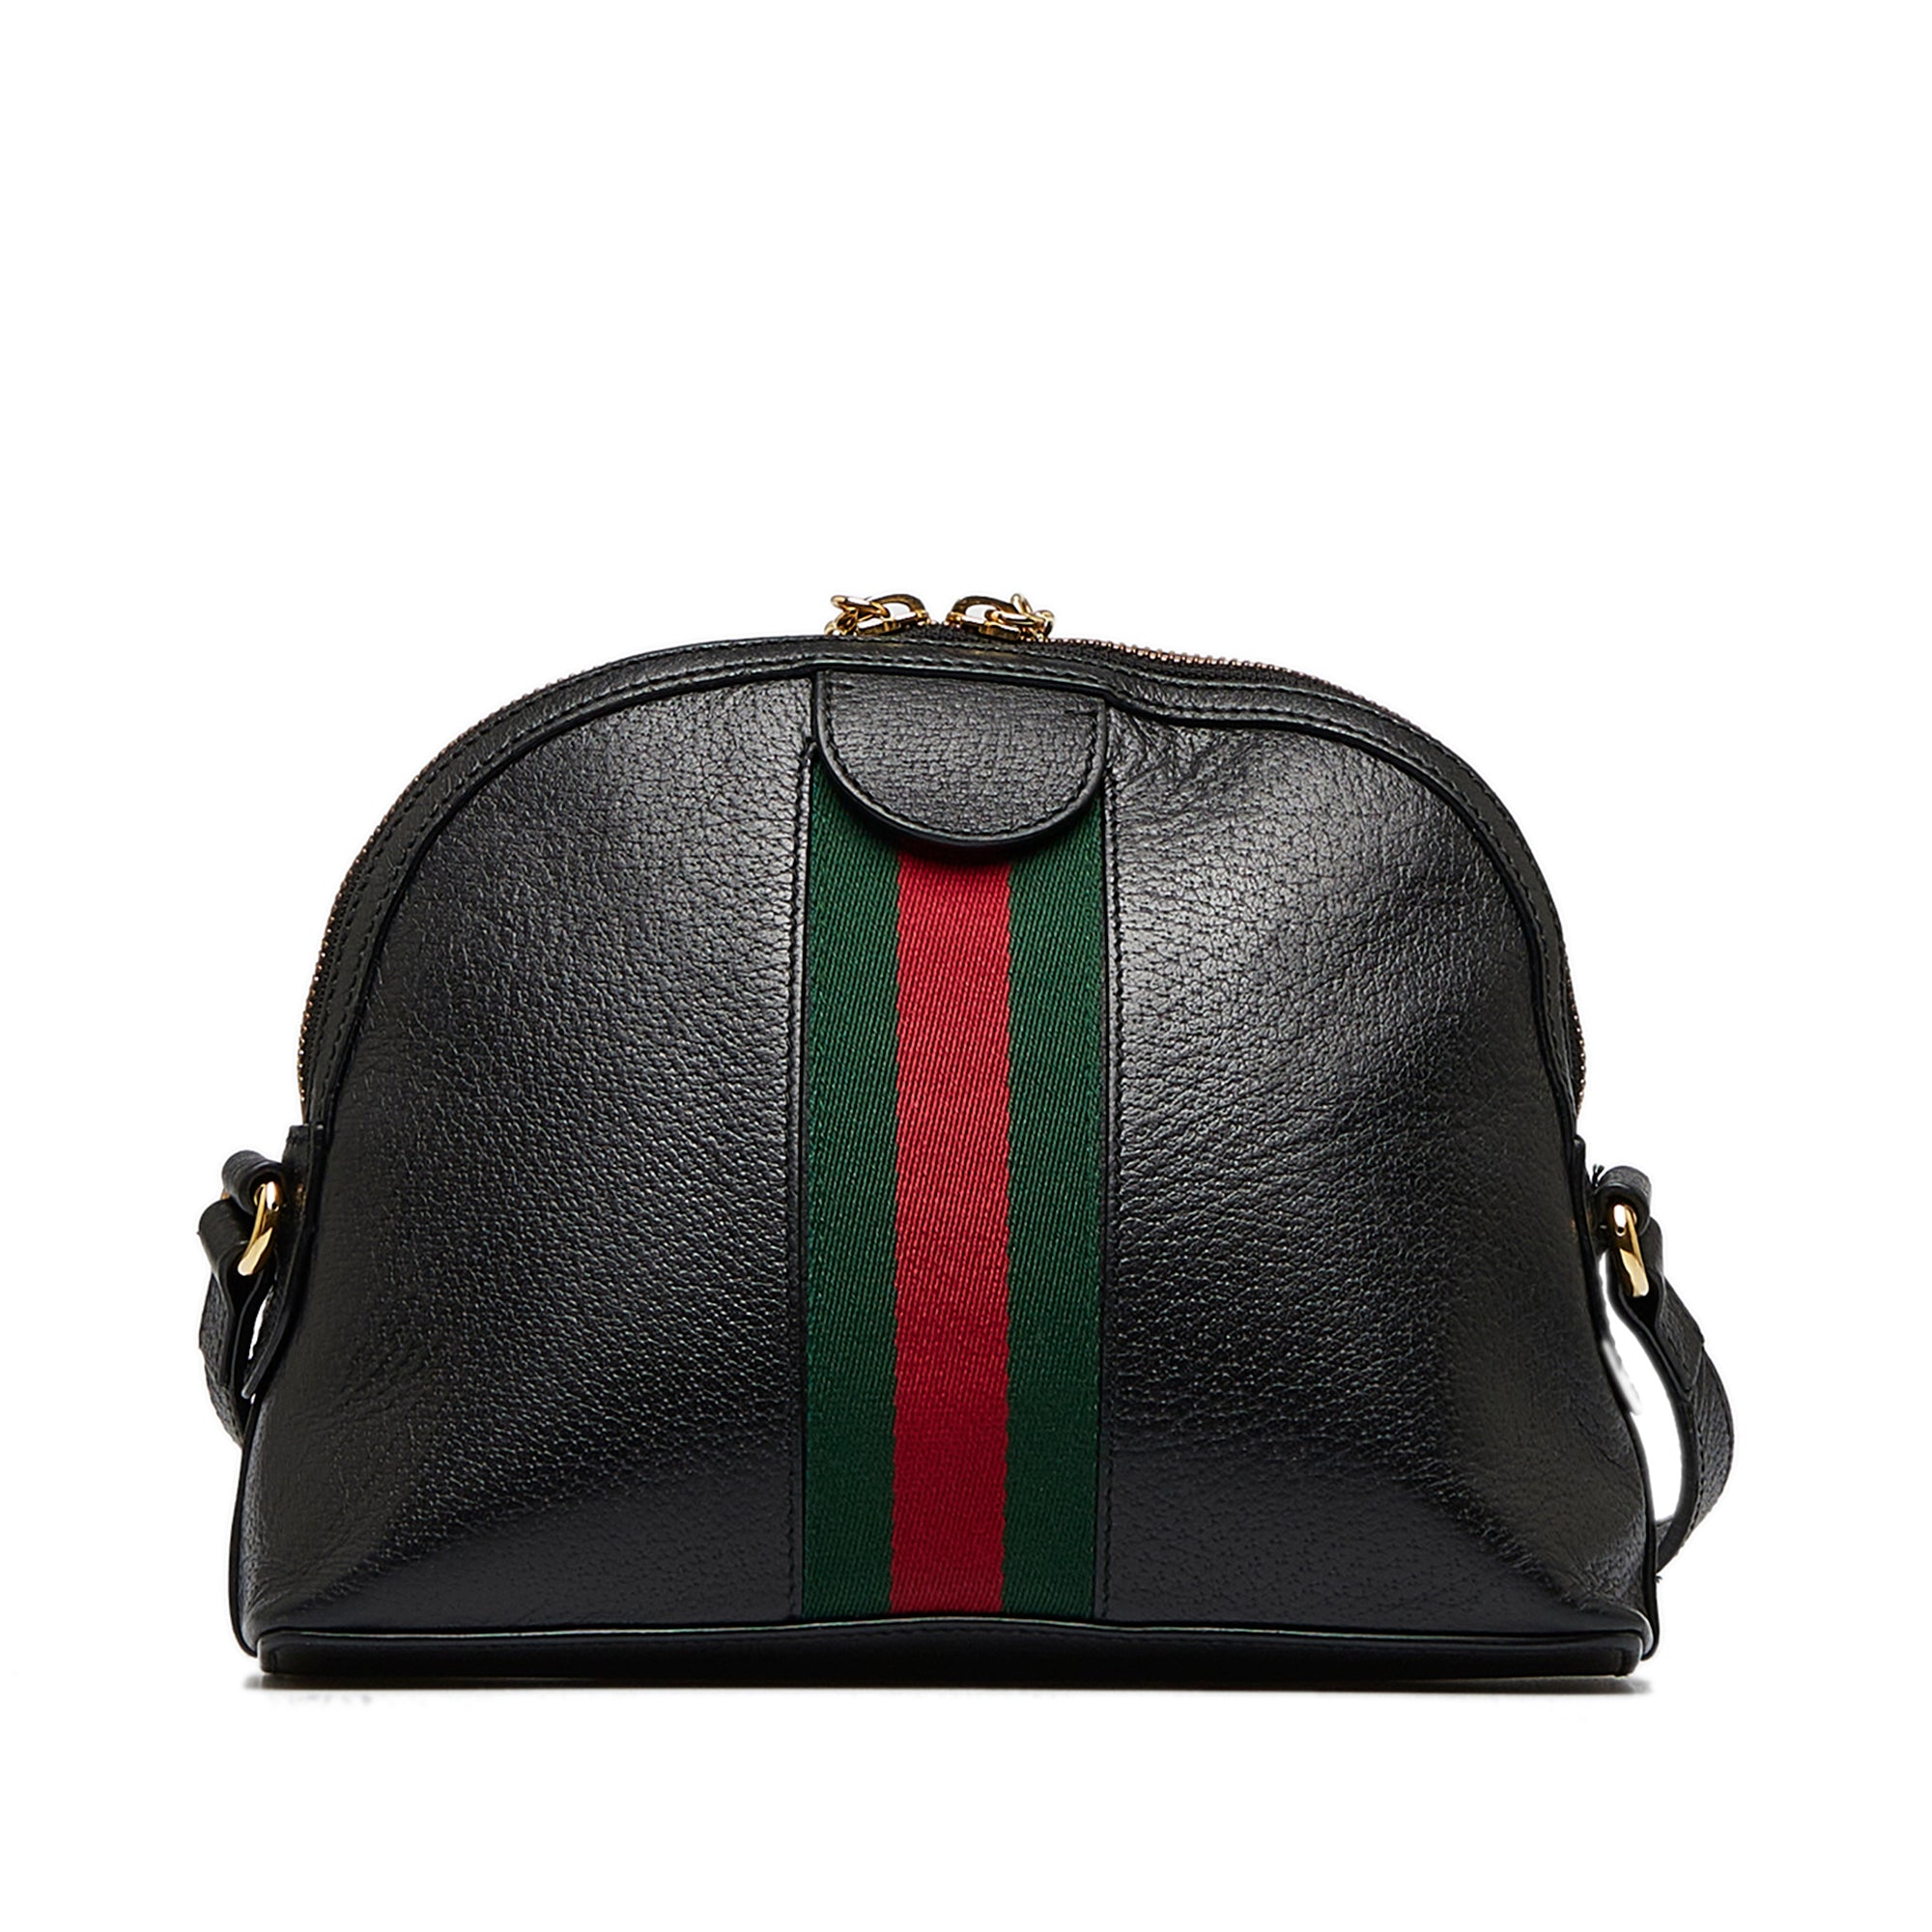 Gucci Ophidia Black Leather Shoulder Bag